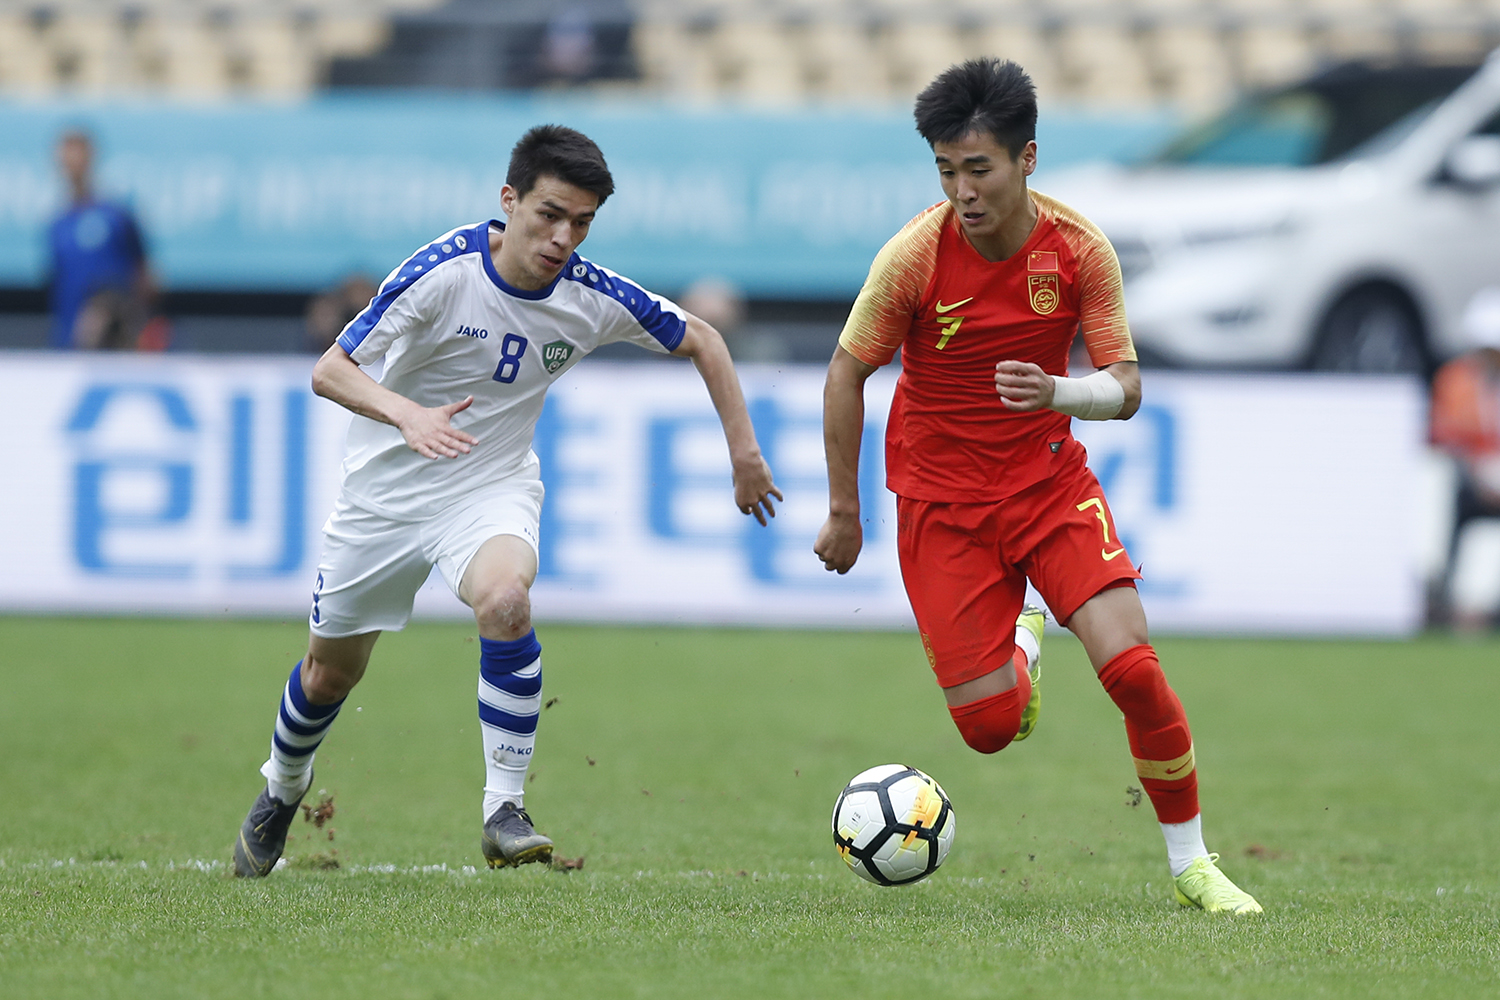 Chinês é suspenso por clube após cometer falta grave pela seleção